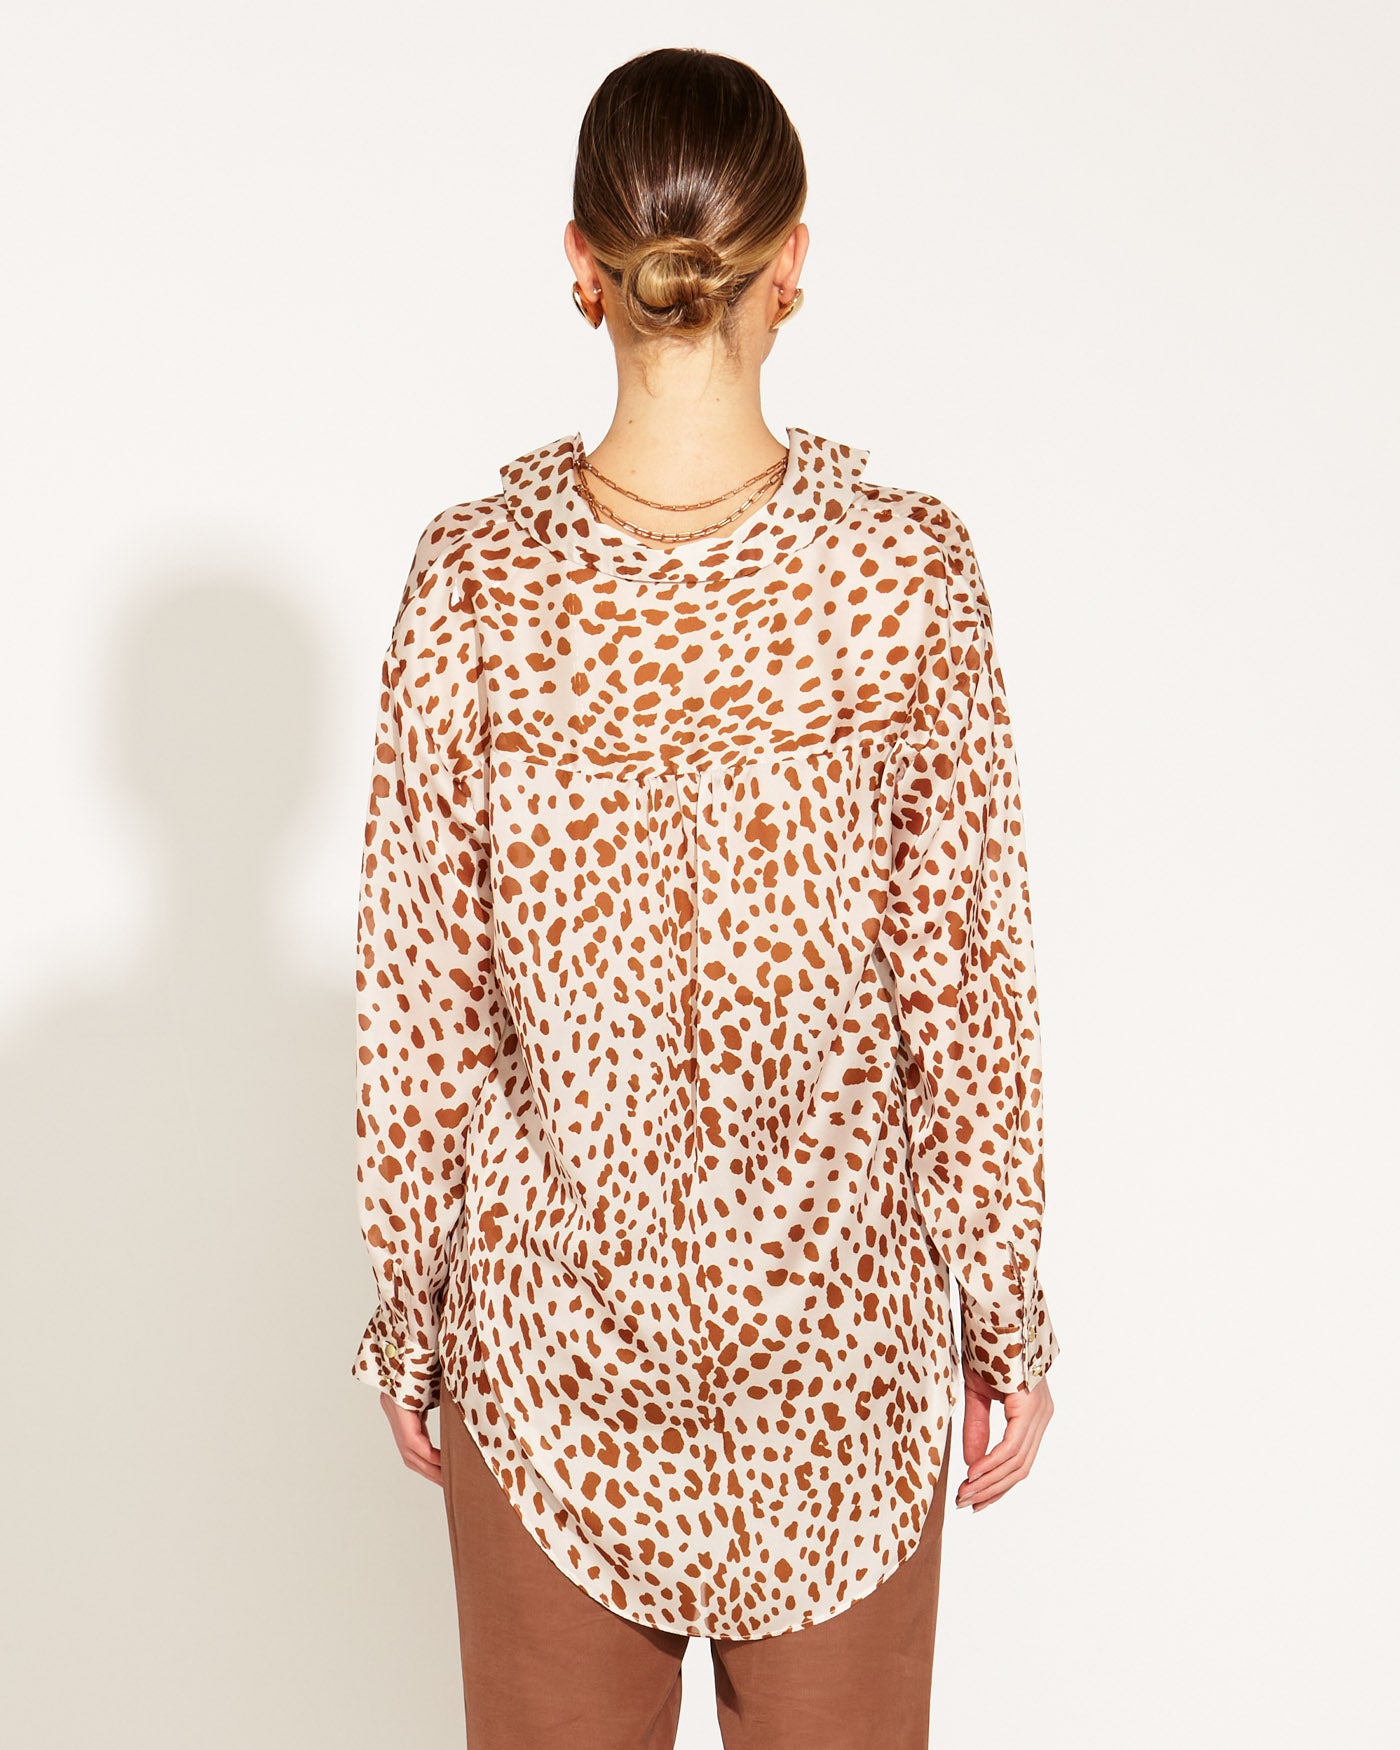 True To Life Collared Shirt - Giraffe Print